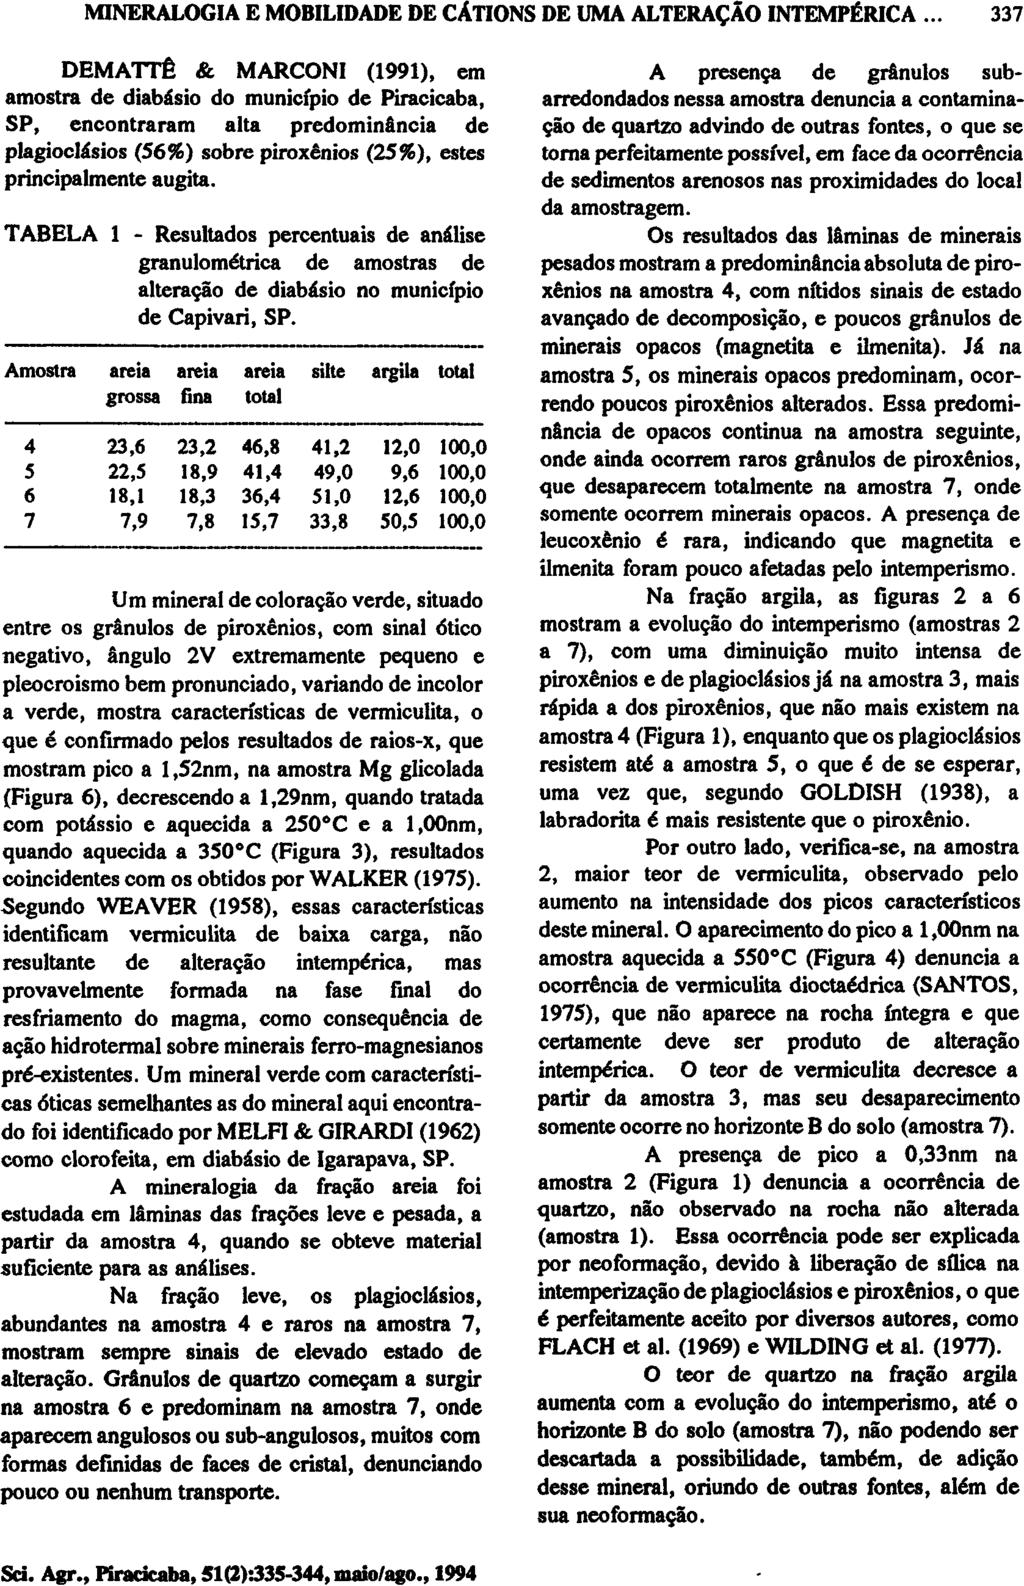 DEMATTÊ & MARCONI (1991), em amostra de diabásio do município de Piracicaba, SP, encontraram alta predominância de plagioclásios (56%) sobre piroxênios (25%), estes principalmente augita.